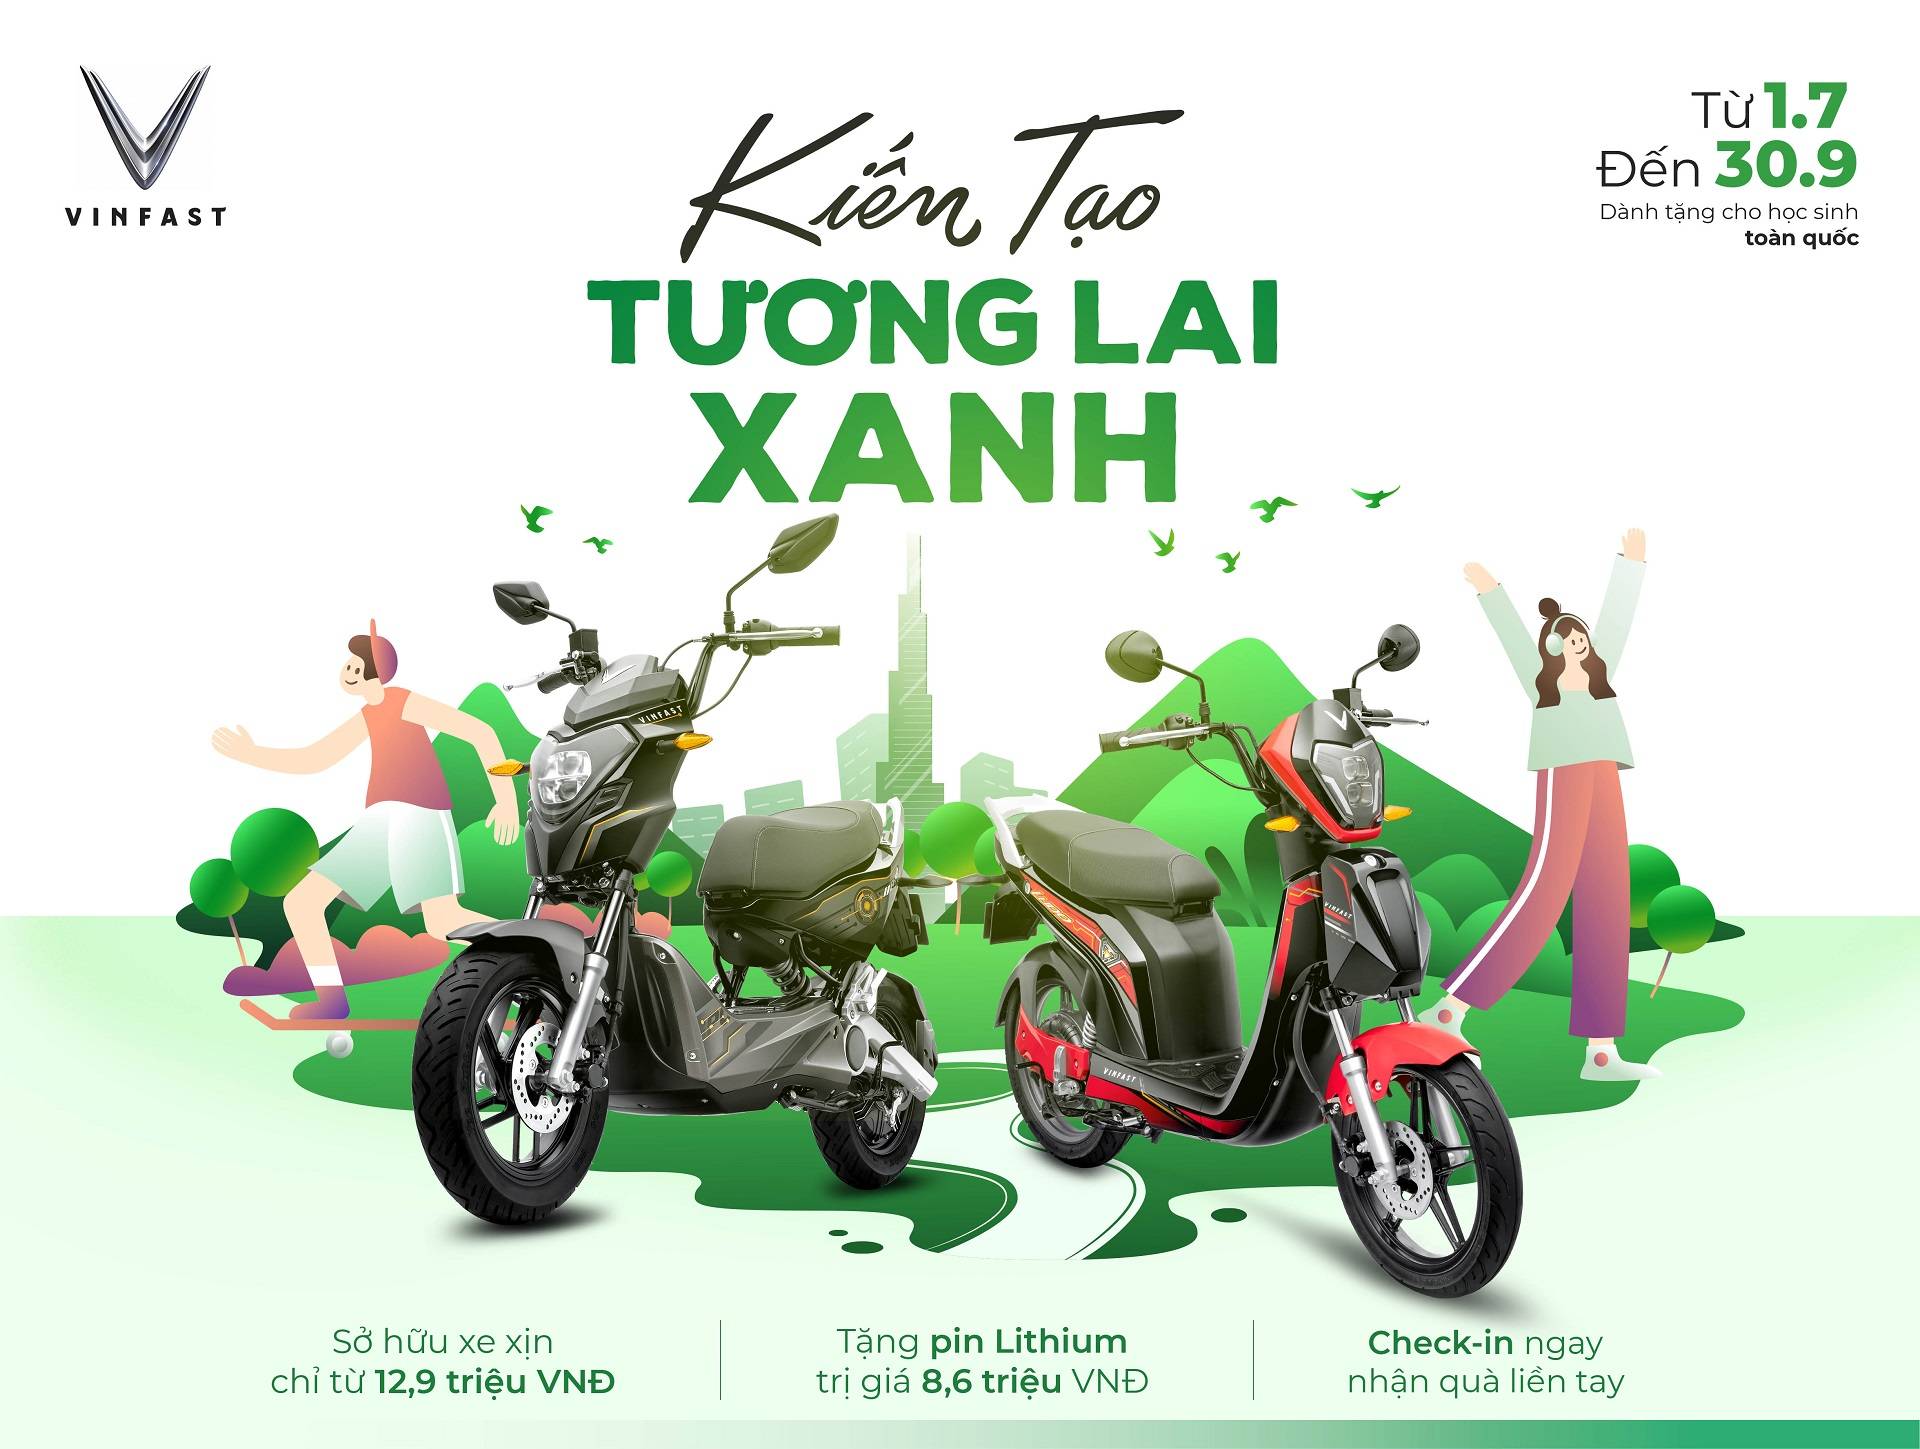 Chiến dịch xanh của VinGroup với hệ thống xe điện VinFast tiên phong trong lĩnh vực xe máy điện tại Việt Nam